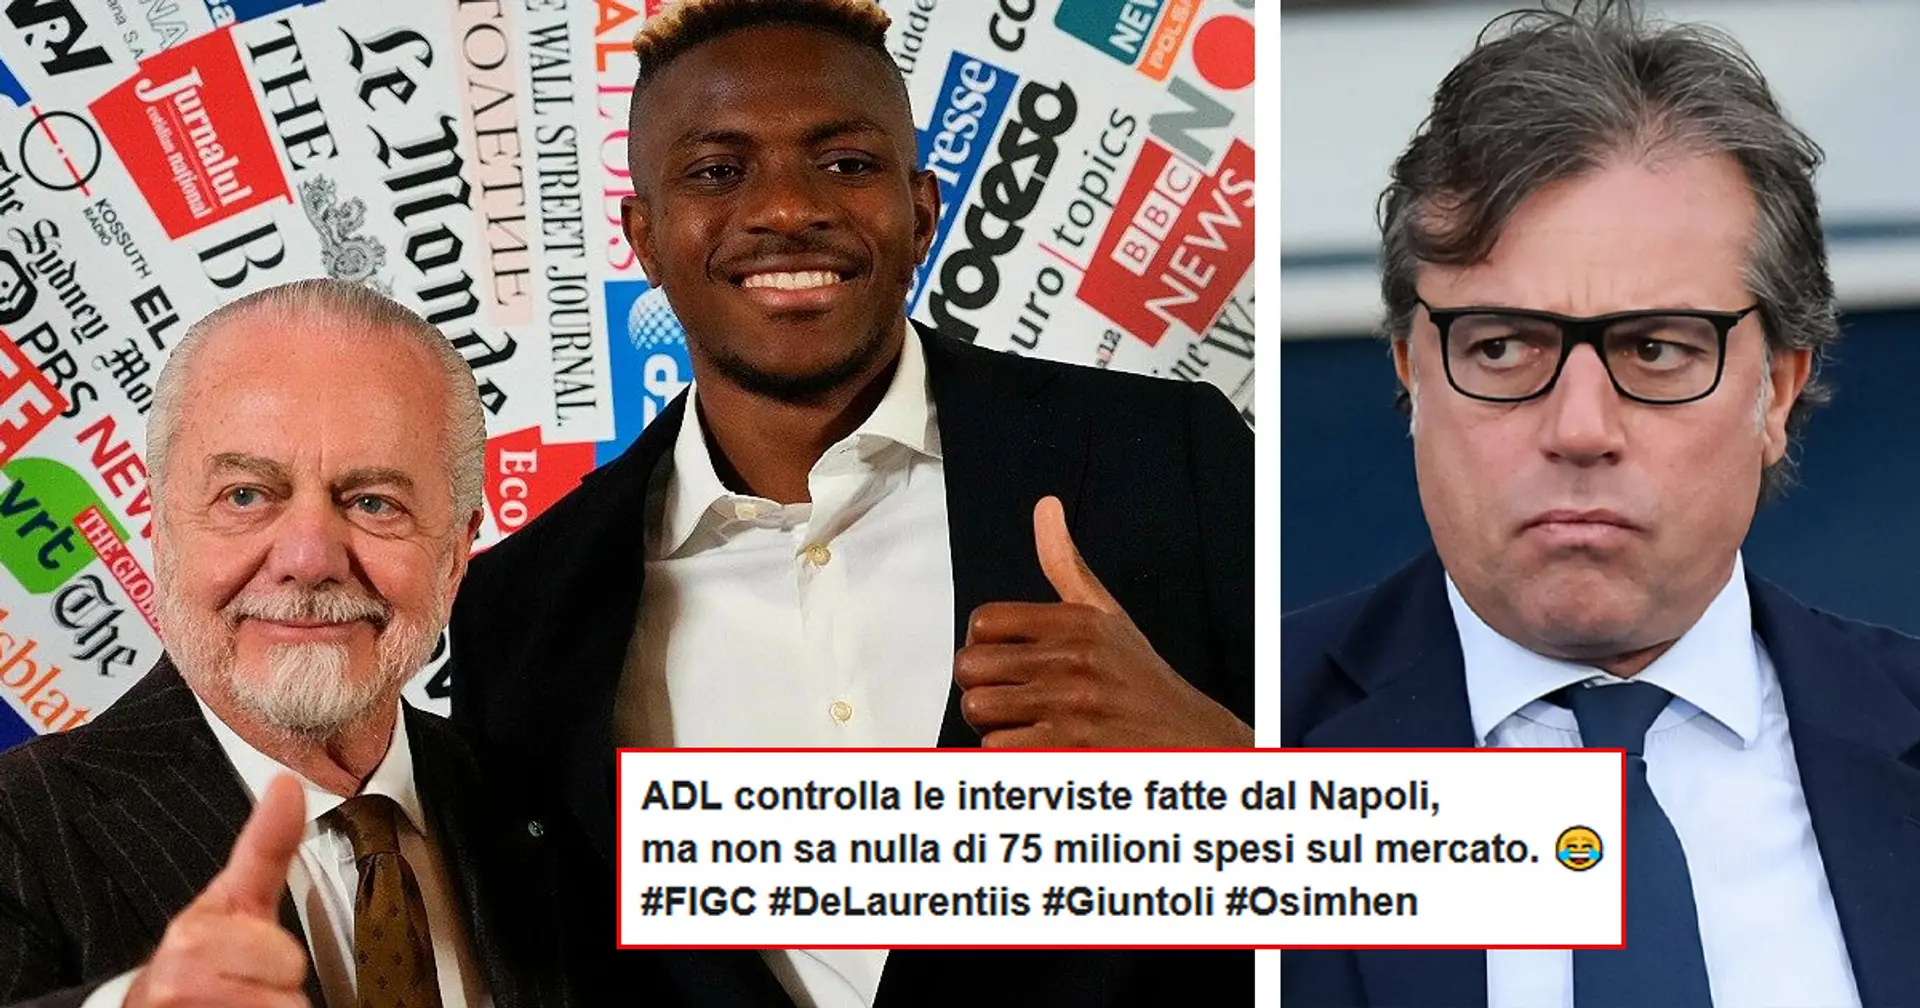 "Sai nulla di 75 milioni?": i tifosi della Juve rispondono a De Laurentiis che 'infanga' Giuntoli per l'affare Osimhen